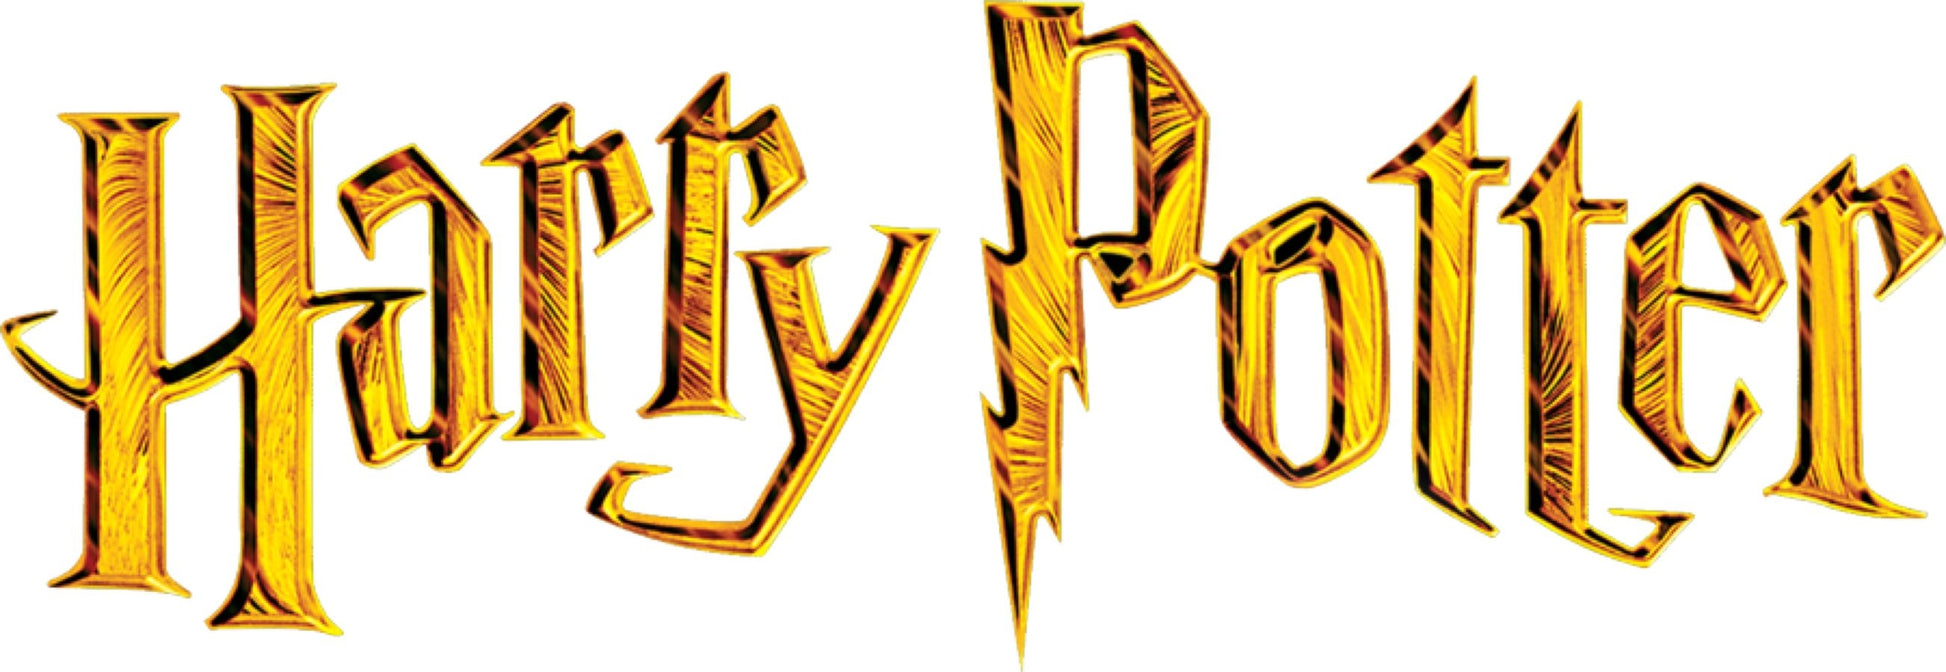 Harry Potter - Gryffindor Plant Pot